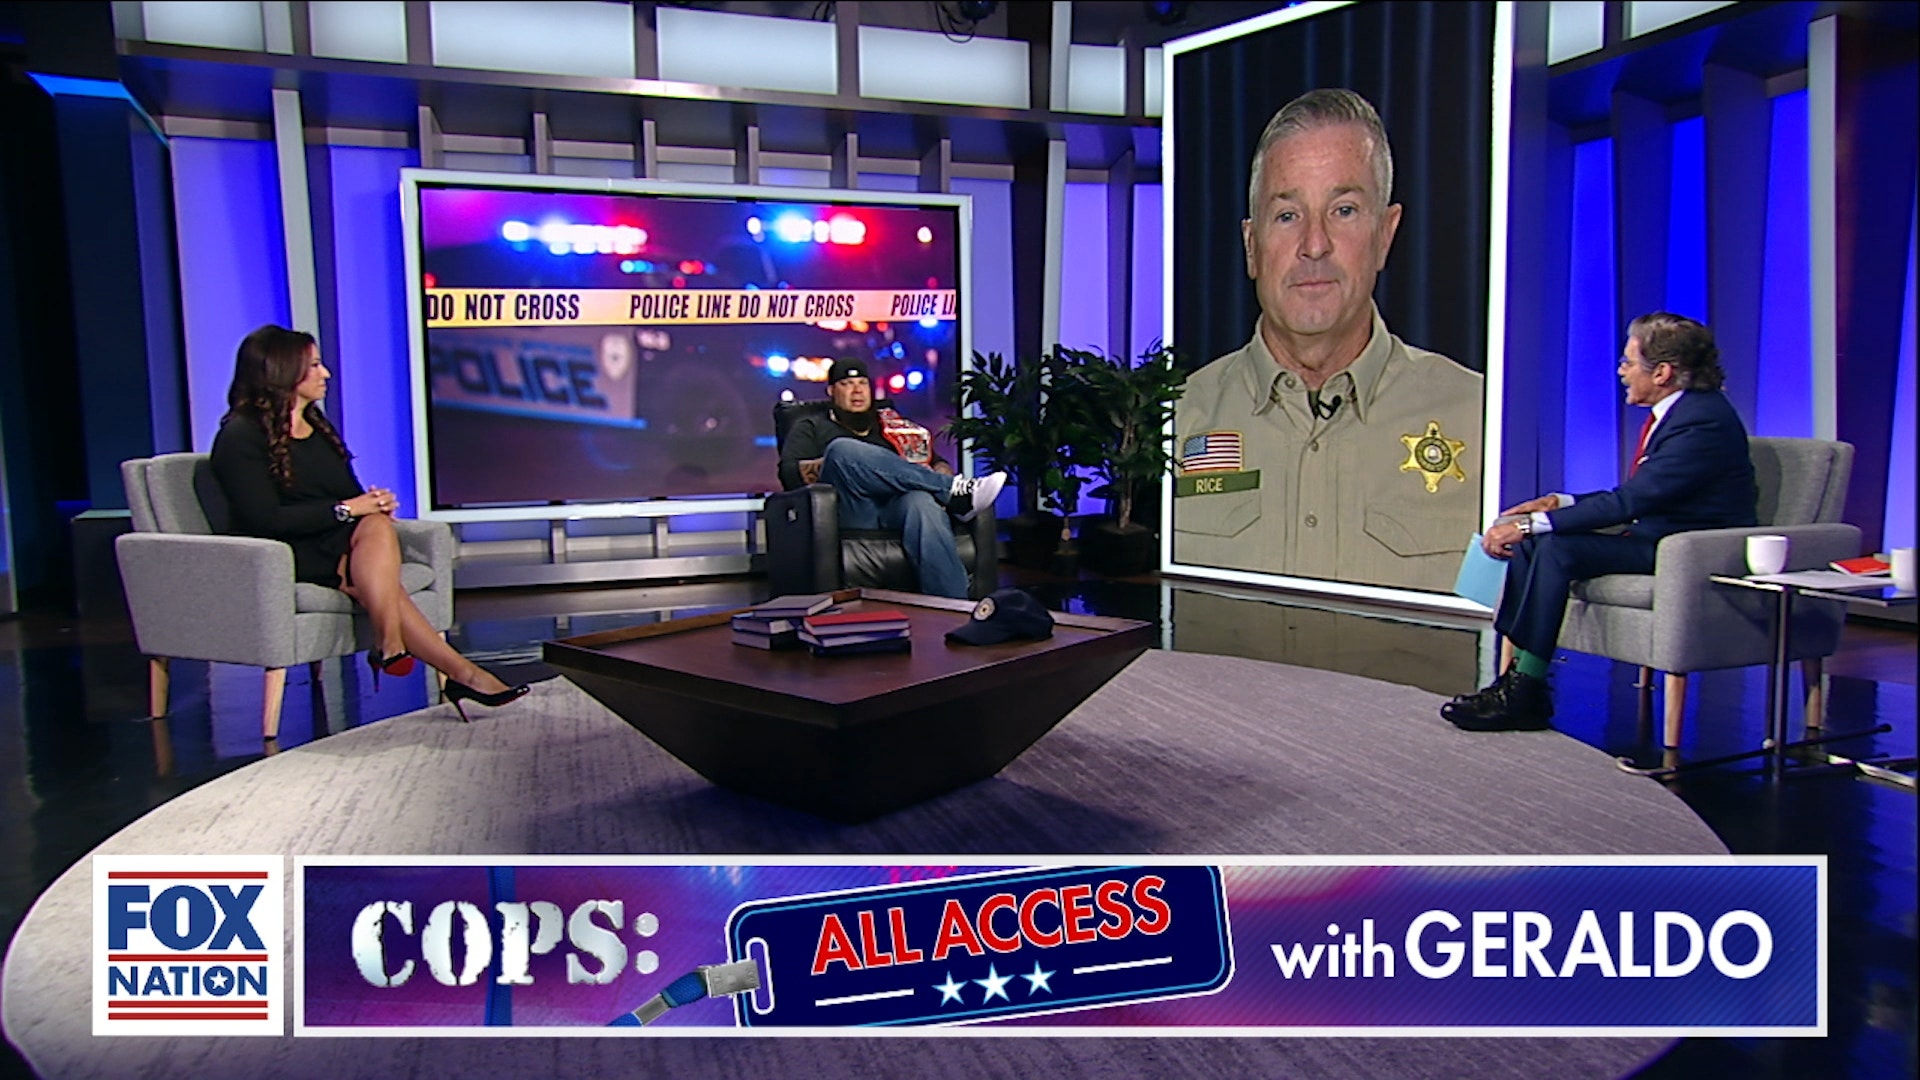 Cops All Access With Geraldo Season 1 Episode 32 Cops All Access With Geraldo Episode 32